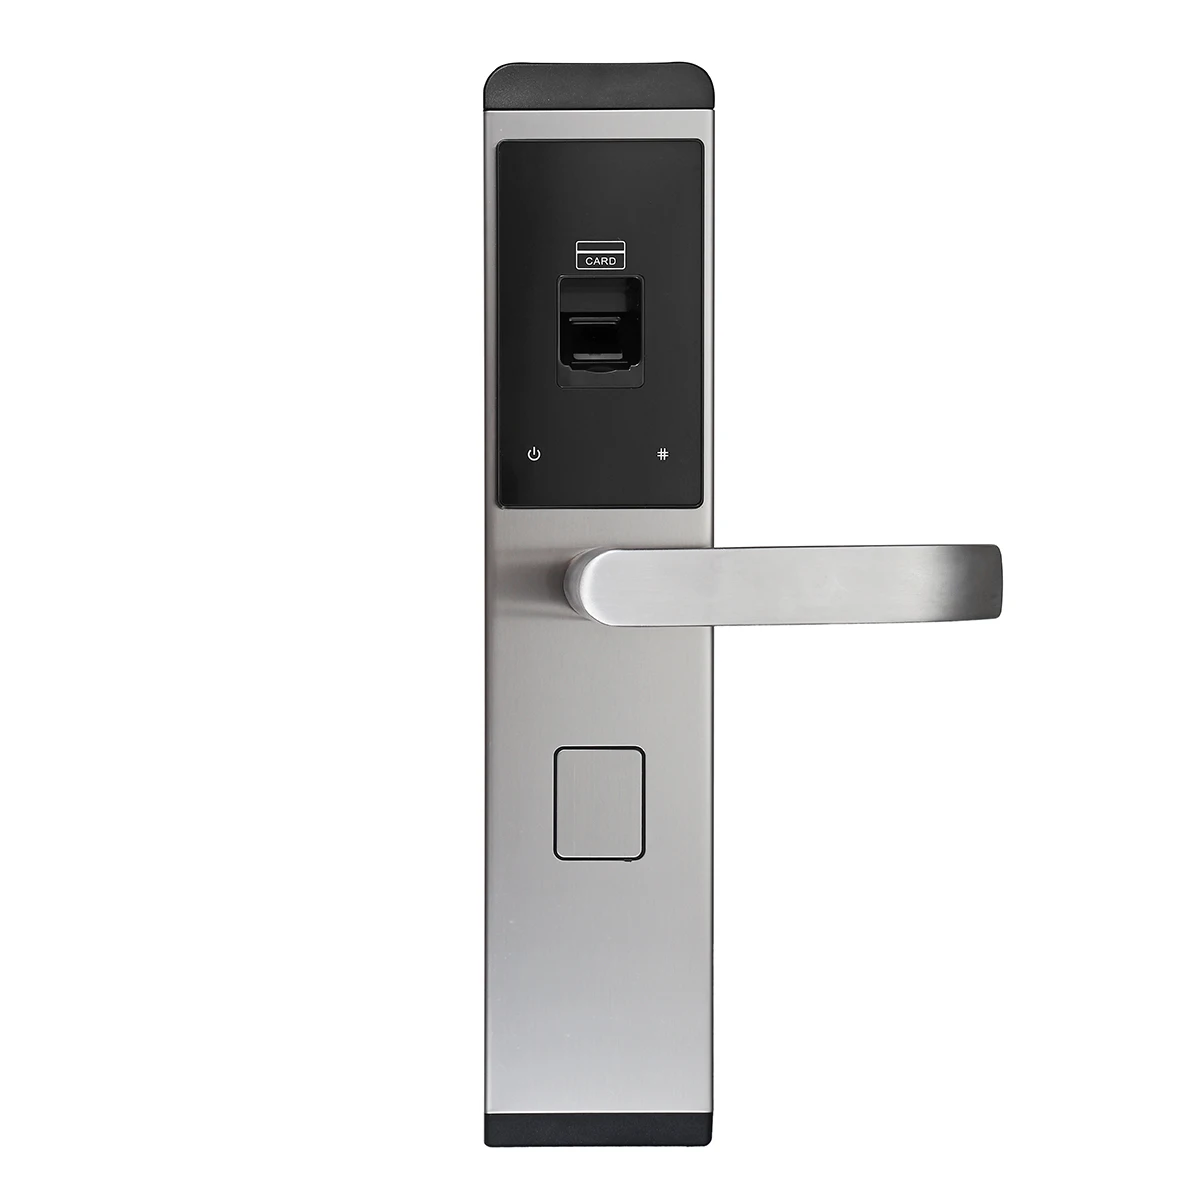 5 способ Универсальный отпечаток пальца умный дверной замок Пароль сенсорный без ключа 2 ключа+ 4 карты Электрический замок контроль доступа домашний отель 3 цвета